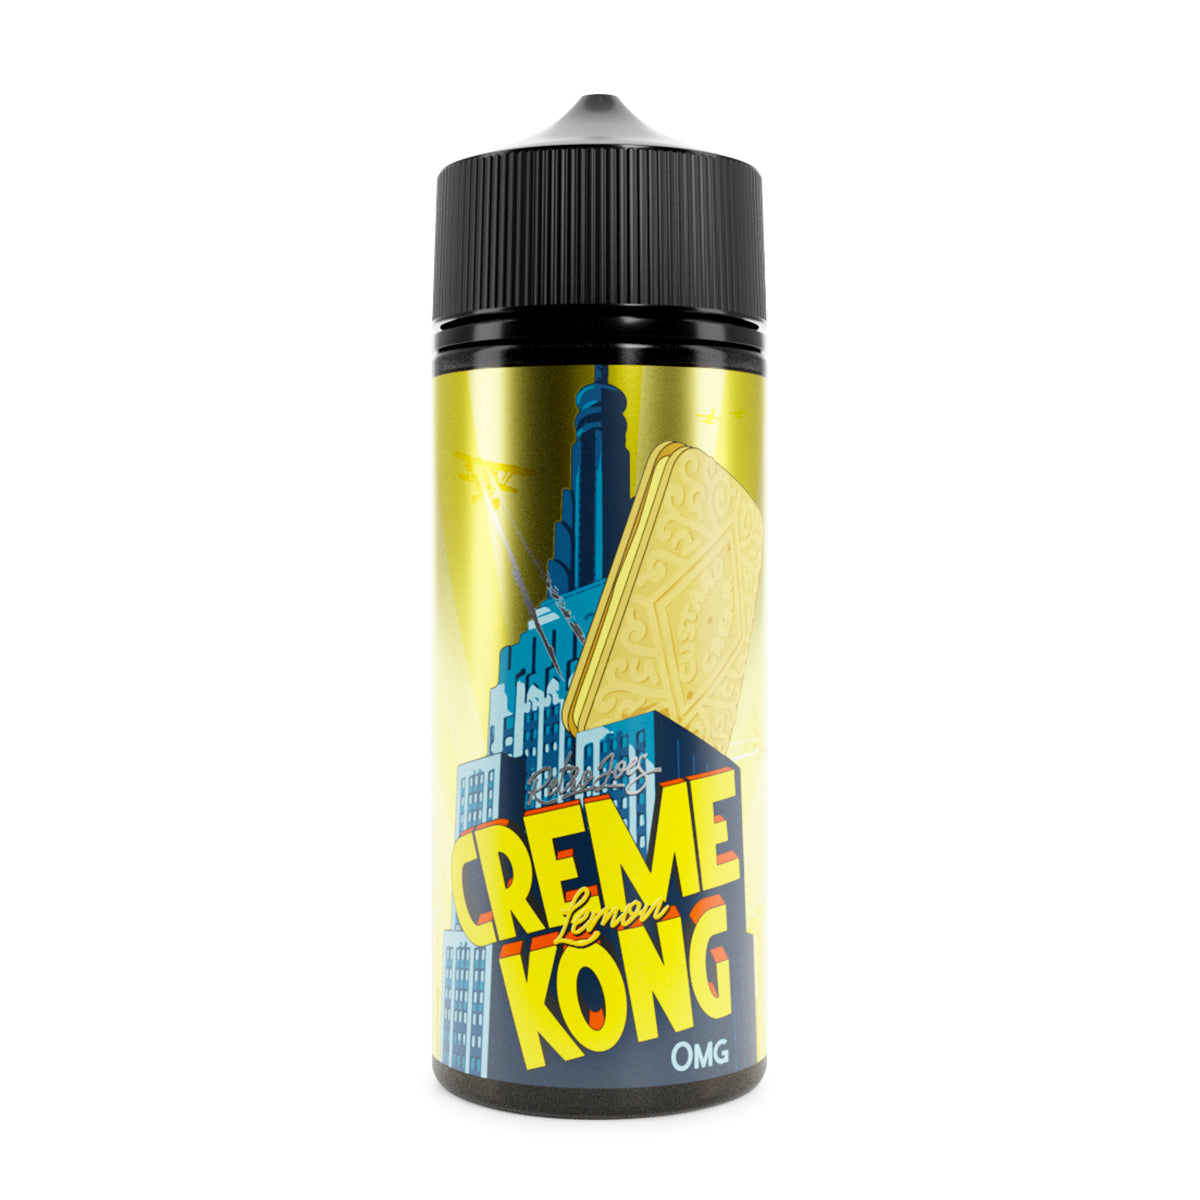 Retro Joes Creme Kong Lemon 0mg 100ml Shortfill E-Liquid